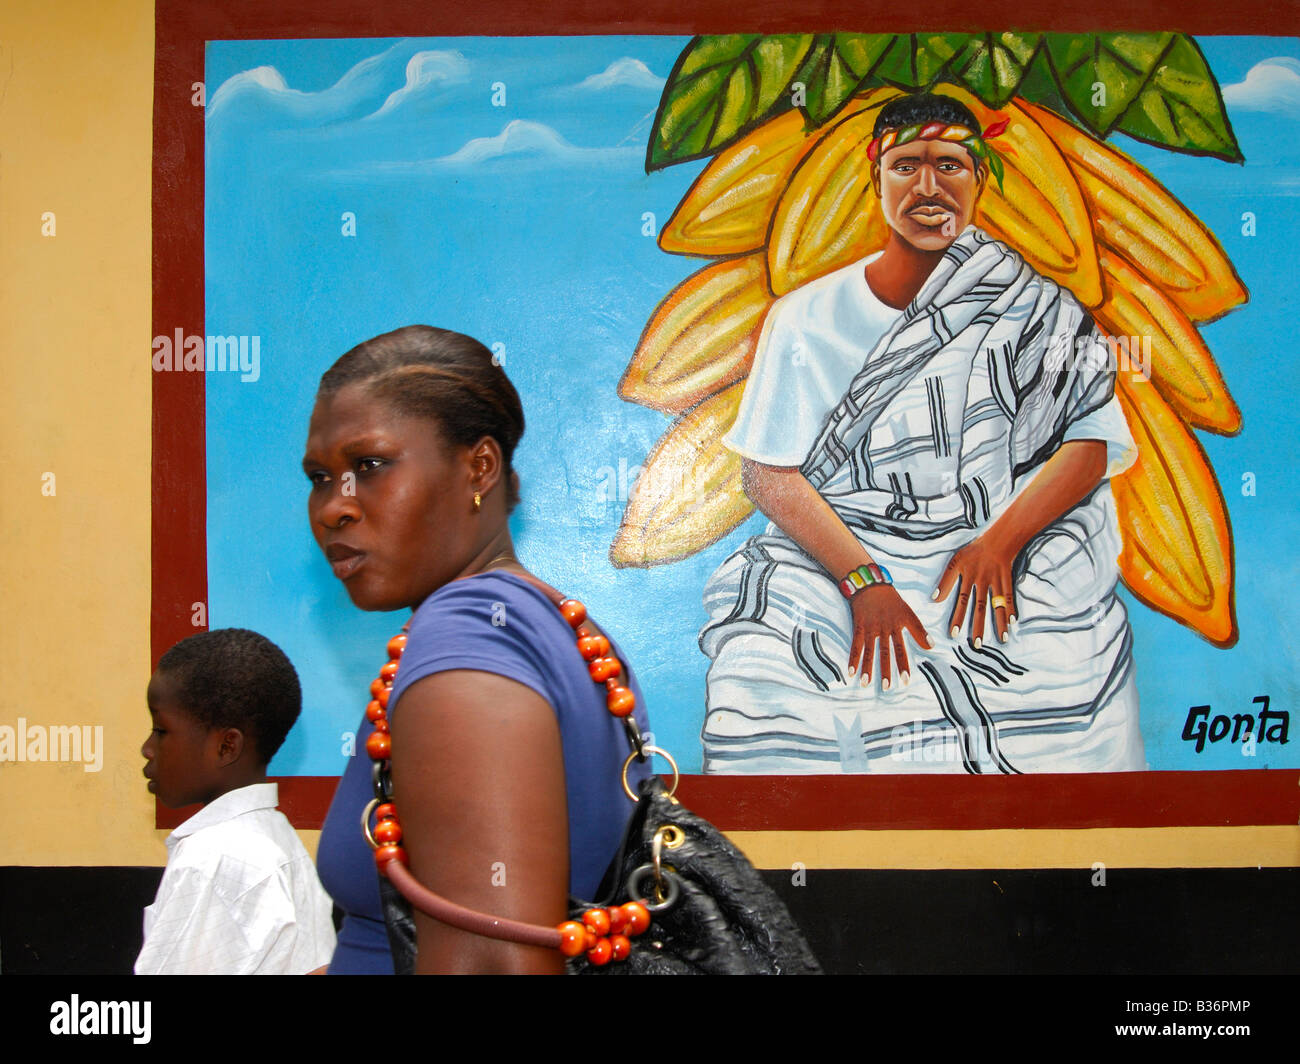 Pittura murale di Tetteh Quarshie, padre della coltivazione del cacao in Ghana, Mampong, Ghana Foto Stock